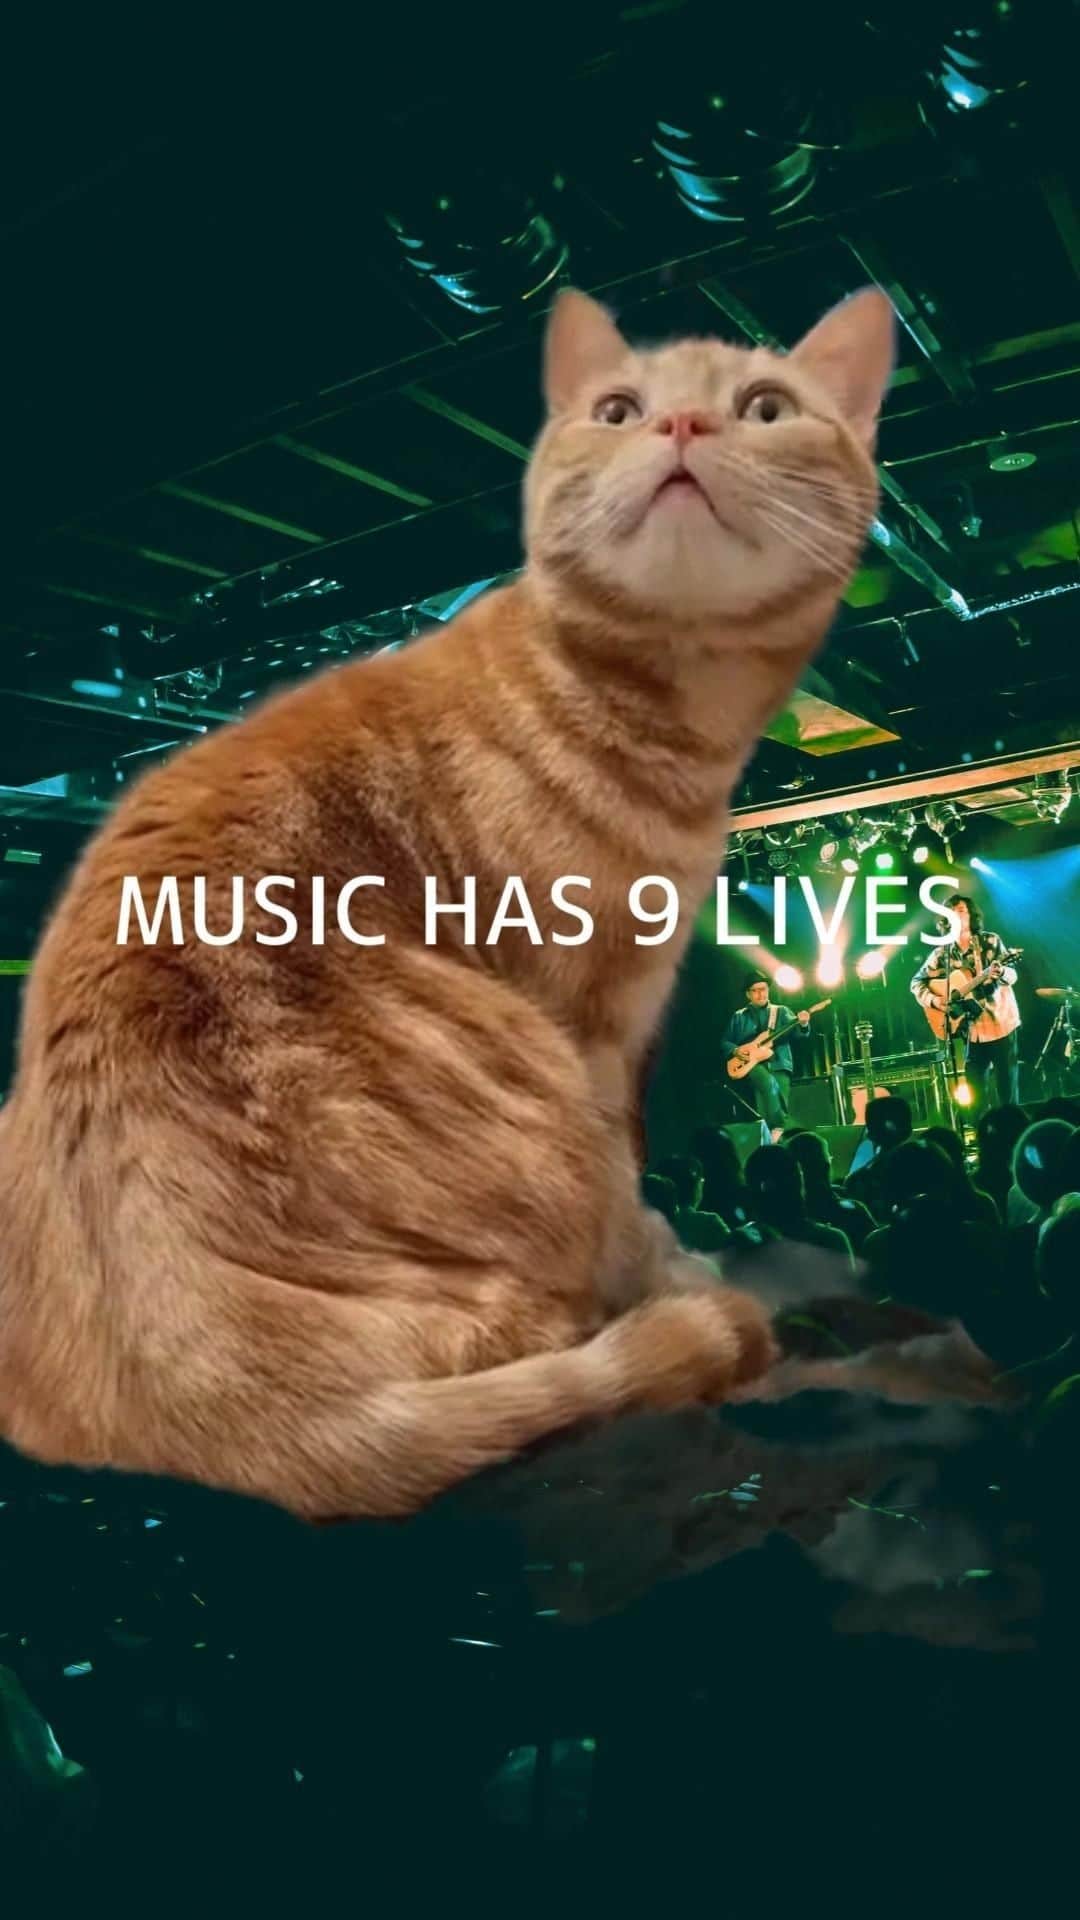 広沢タダシのインスタグラム：「※【EP『Music has 9 lives』曲解説】#2  ＜M2:Music has 9 lives＞  「猫はしぶとい」という意味のことわざ「A cat has 9 lives」から、”cat”を”music”に置き換えてみました。  音楽はしぶとい。音楽は死なない。  一読すると抽象的な歌詞ですが、”死んでも生きる”というテーマに繋がる何かを、聴き手に想起させるイメージで書いています。  フォーク、カントリースタイルのアコギにガットギター、オルガンを重ねました。 ーーーーーーーーーーーーーーーーーーー music has nine lives  ヘタクソでも美しい 世界は思ったよりやさしい 手放すことが難しいよね 夜が迎えに来たって  死んだ後ようやく生きる 公園をこしらえるように 知らずに子どもたちが遊ぶ ママを呼ぶ声がする  嘘でもいいや歌ってみろよ 本当になるかもしれない 消えてゆけ魂の中に 誰のせいでもないまま 僕らが生きるために ーーーーーーーーーーーーーーーーーーー 広沢タダシ　New EP『Music has 9 lives』 ¥3,000-（tax in） オンラインショップにて。サインして送ります！＾＾ https://hirosawa.theshop.jp/  広沢タダシ 弾き語り Tour 2024〜春の使い〜 チケット予約受付中！ ＜大阪＞2月4日(日) 島之内教会 ＜東京＞2月10日(土)三軒茶屋GRAPEFRUIT MOON https://www.hirosawatadashi.com/schedule」